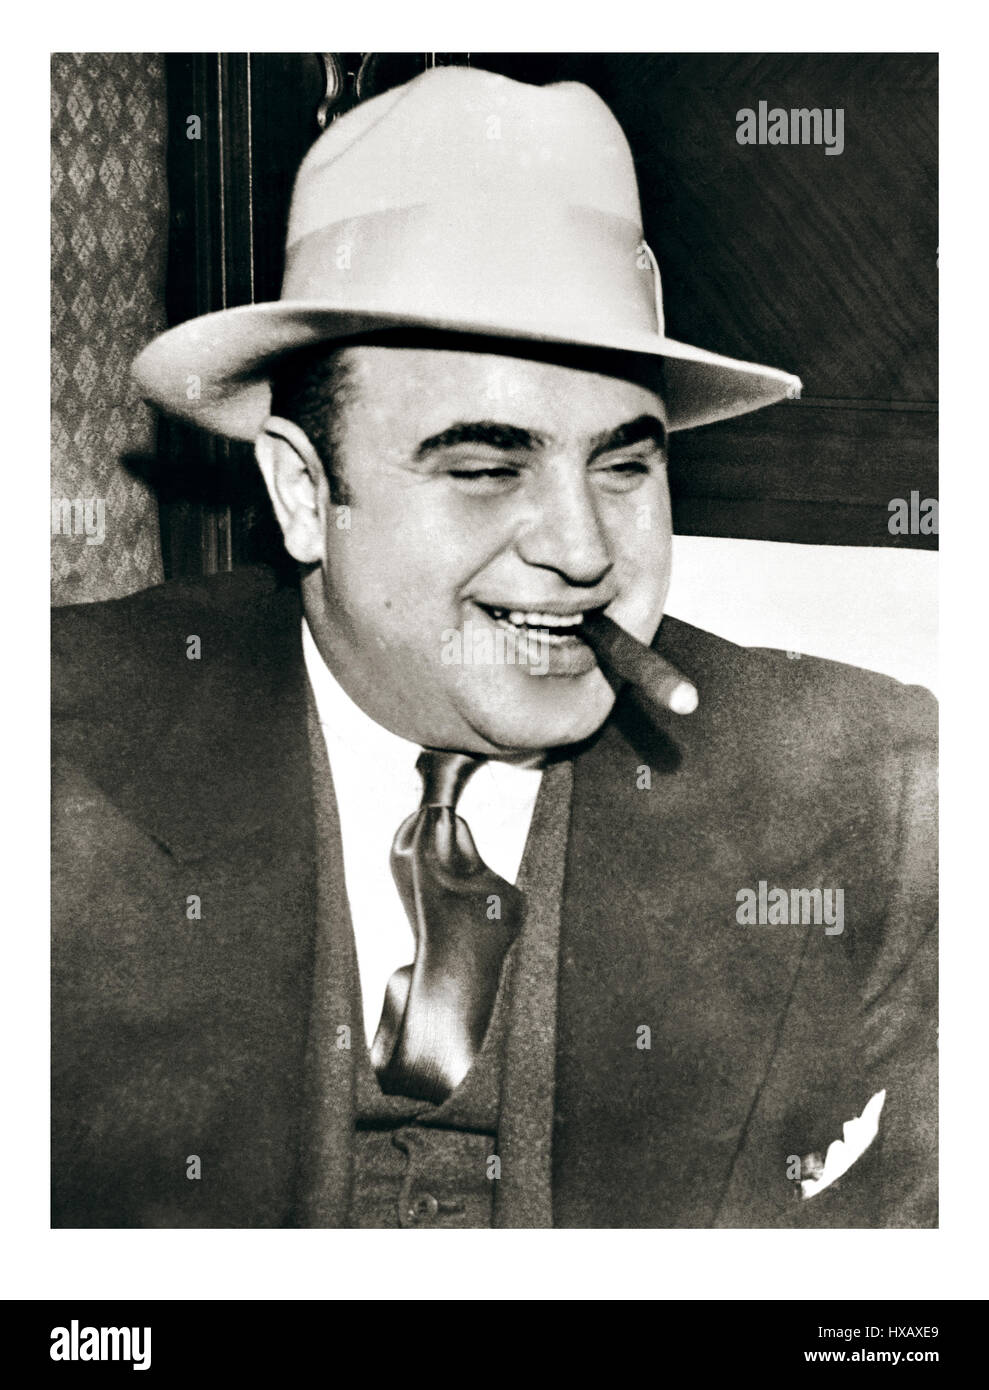 AL CAPONE CIGAR HUT 20er Vintage B&W Bild von Al Capone, die wohl berühmteste der organisierten Kriminalität Herr, oder häufiger als eine Mafia mafia Gangster bekannt, im Jahre 1920 von der amerikanischen Geschichte. Al Capone, beinamen von Alphonse Capone, auch genannt Scarface, (geboren am 17. Januar 1899, Brooklyn, New York, USA - 25. Januar 1947 starb, Palm Island, Florida), dem berühmtesten American Gangster, die die organisierte Kriminalität in Chicago von 1925 bis 1931 beherrscht. Stockfoto